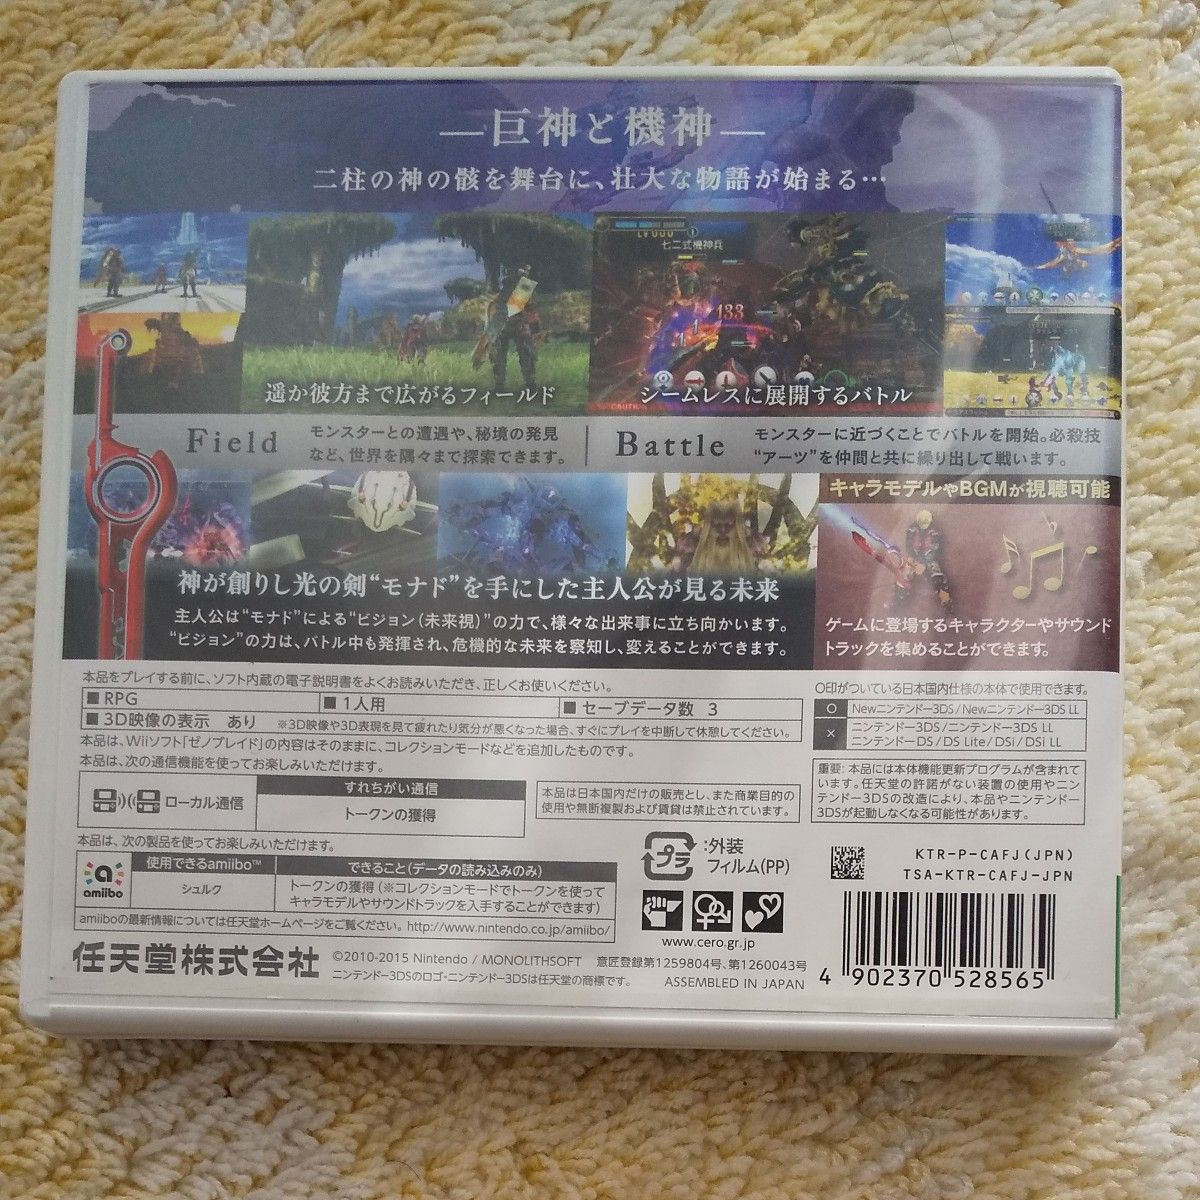 【3DS】 Xenoblade （ゼノブレイド）